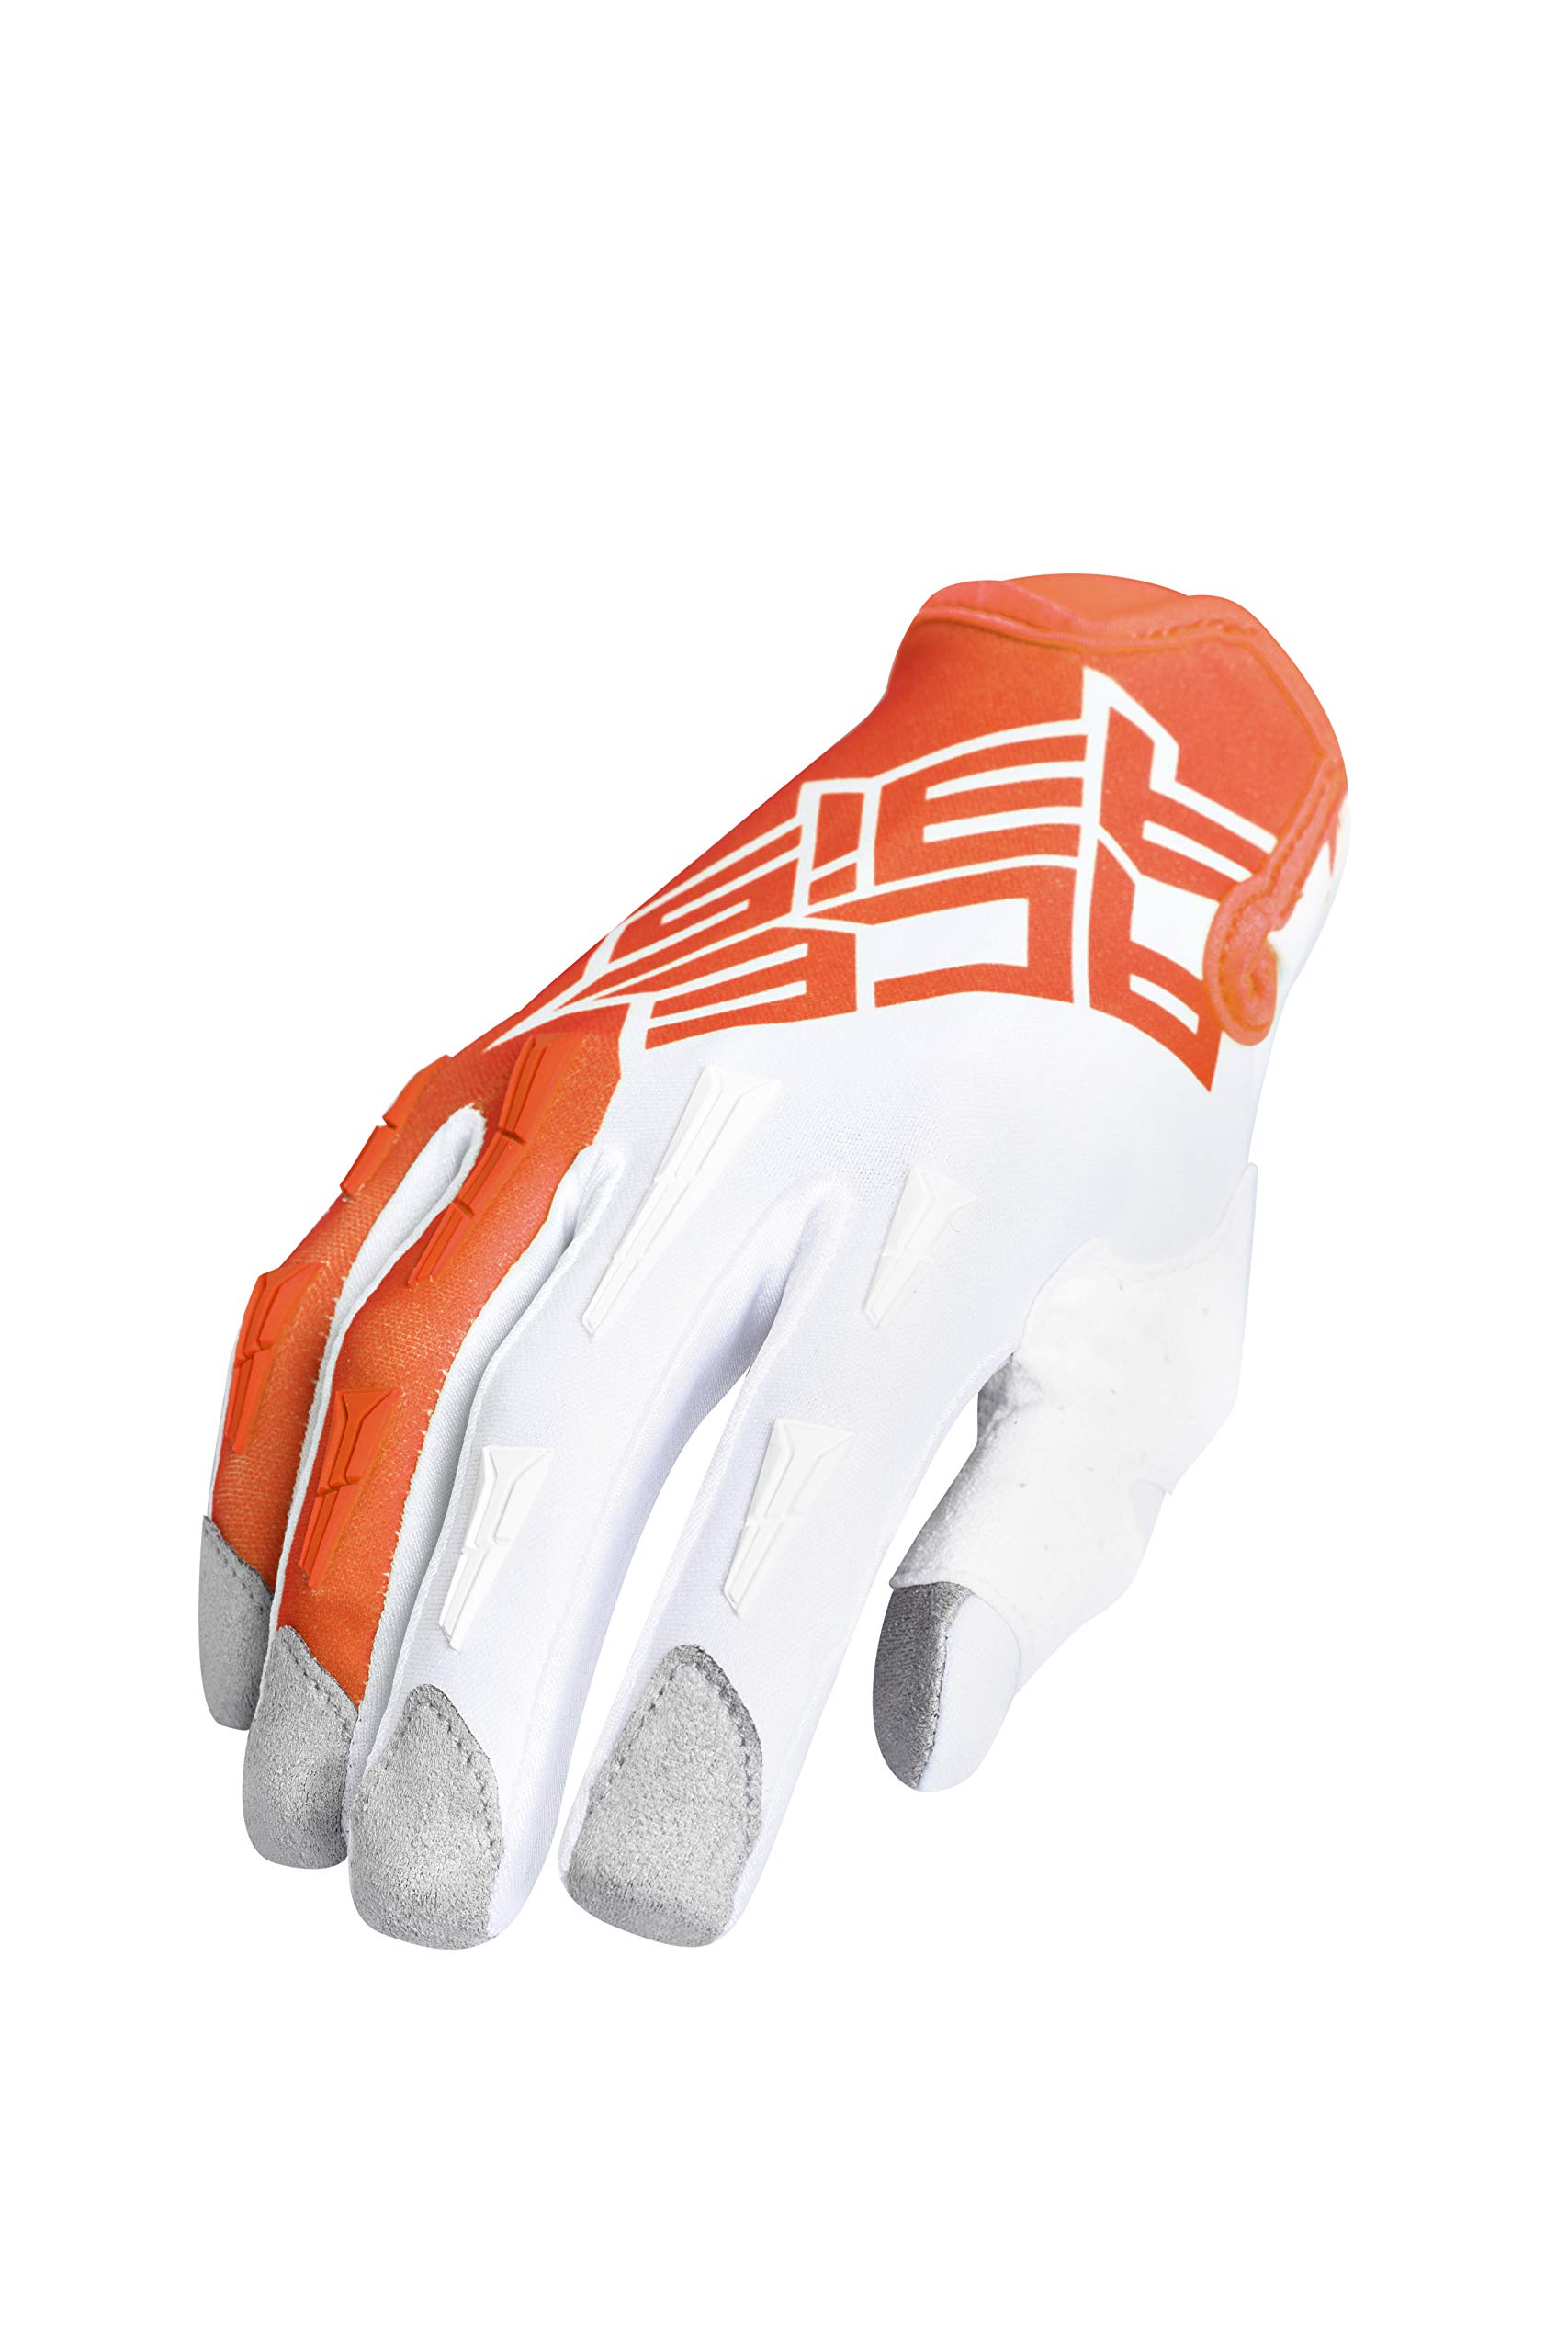 Handschuhe MX X-K KID orange/weiß L von Acerbis